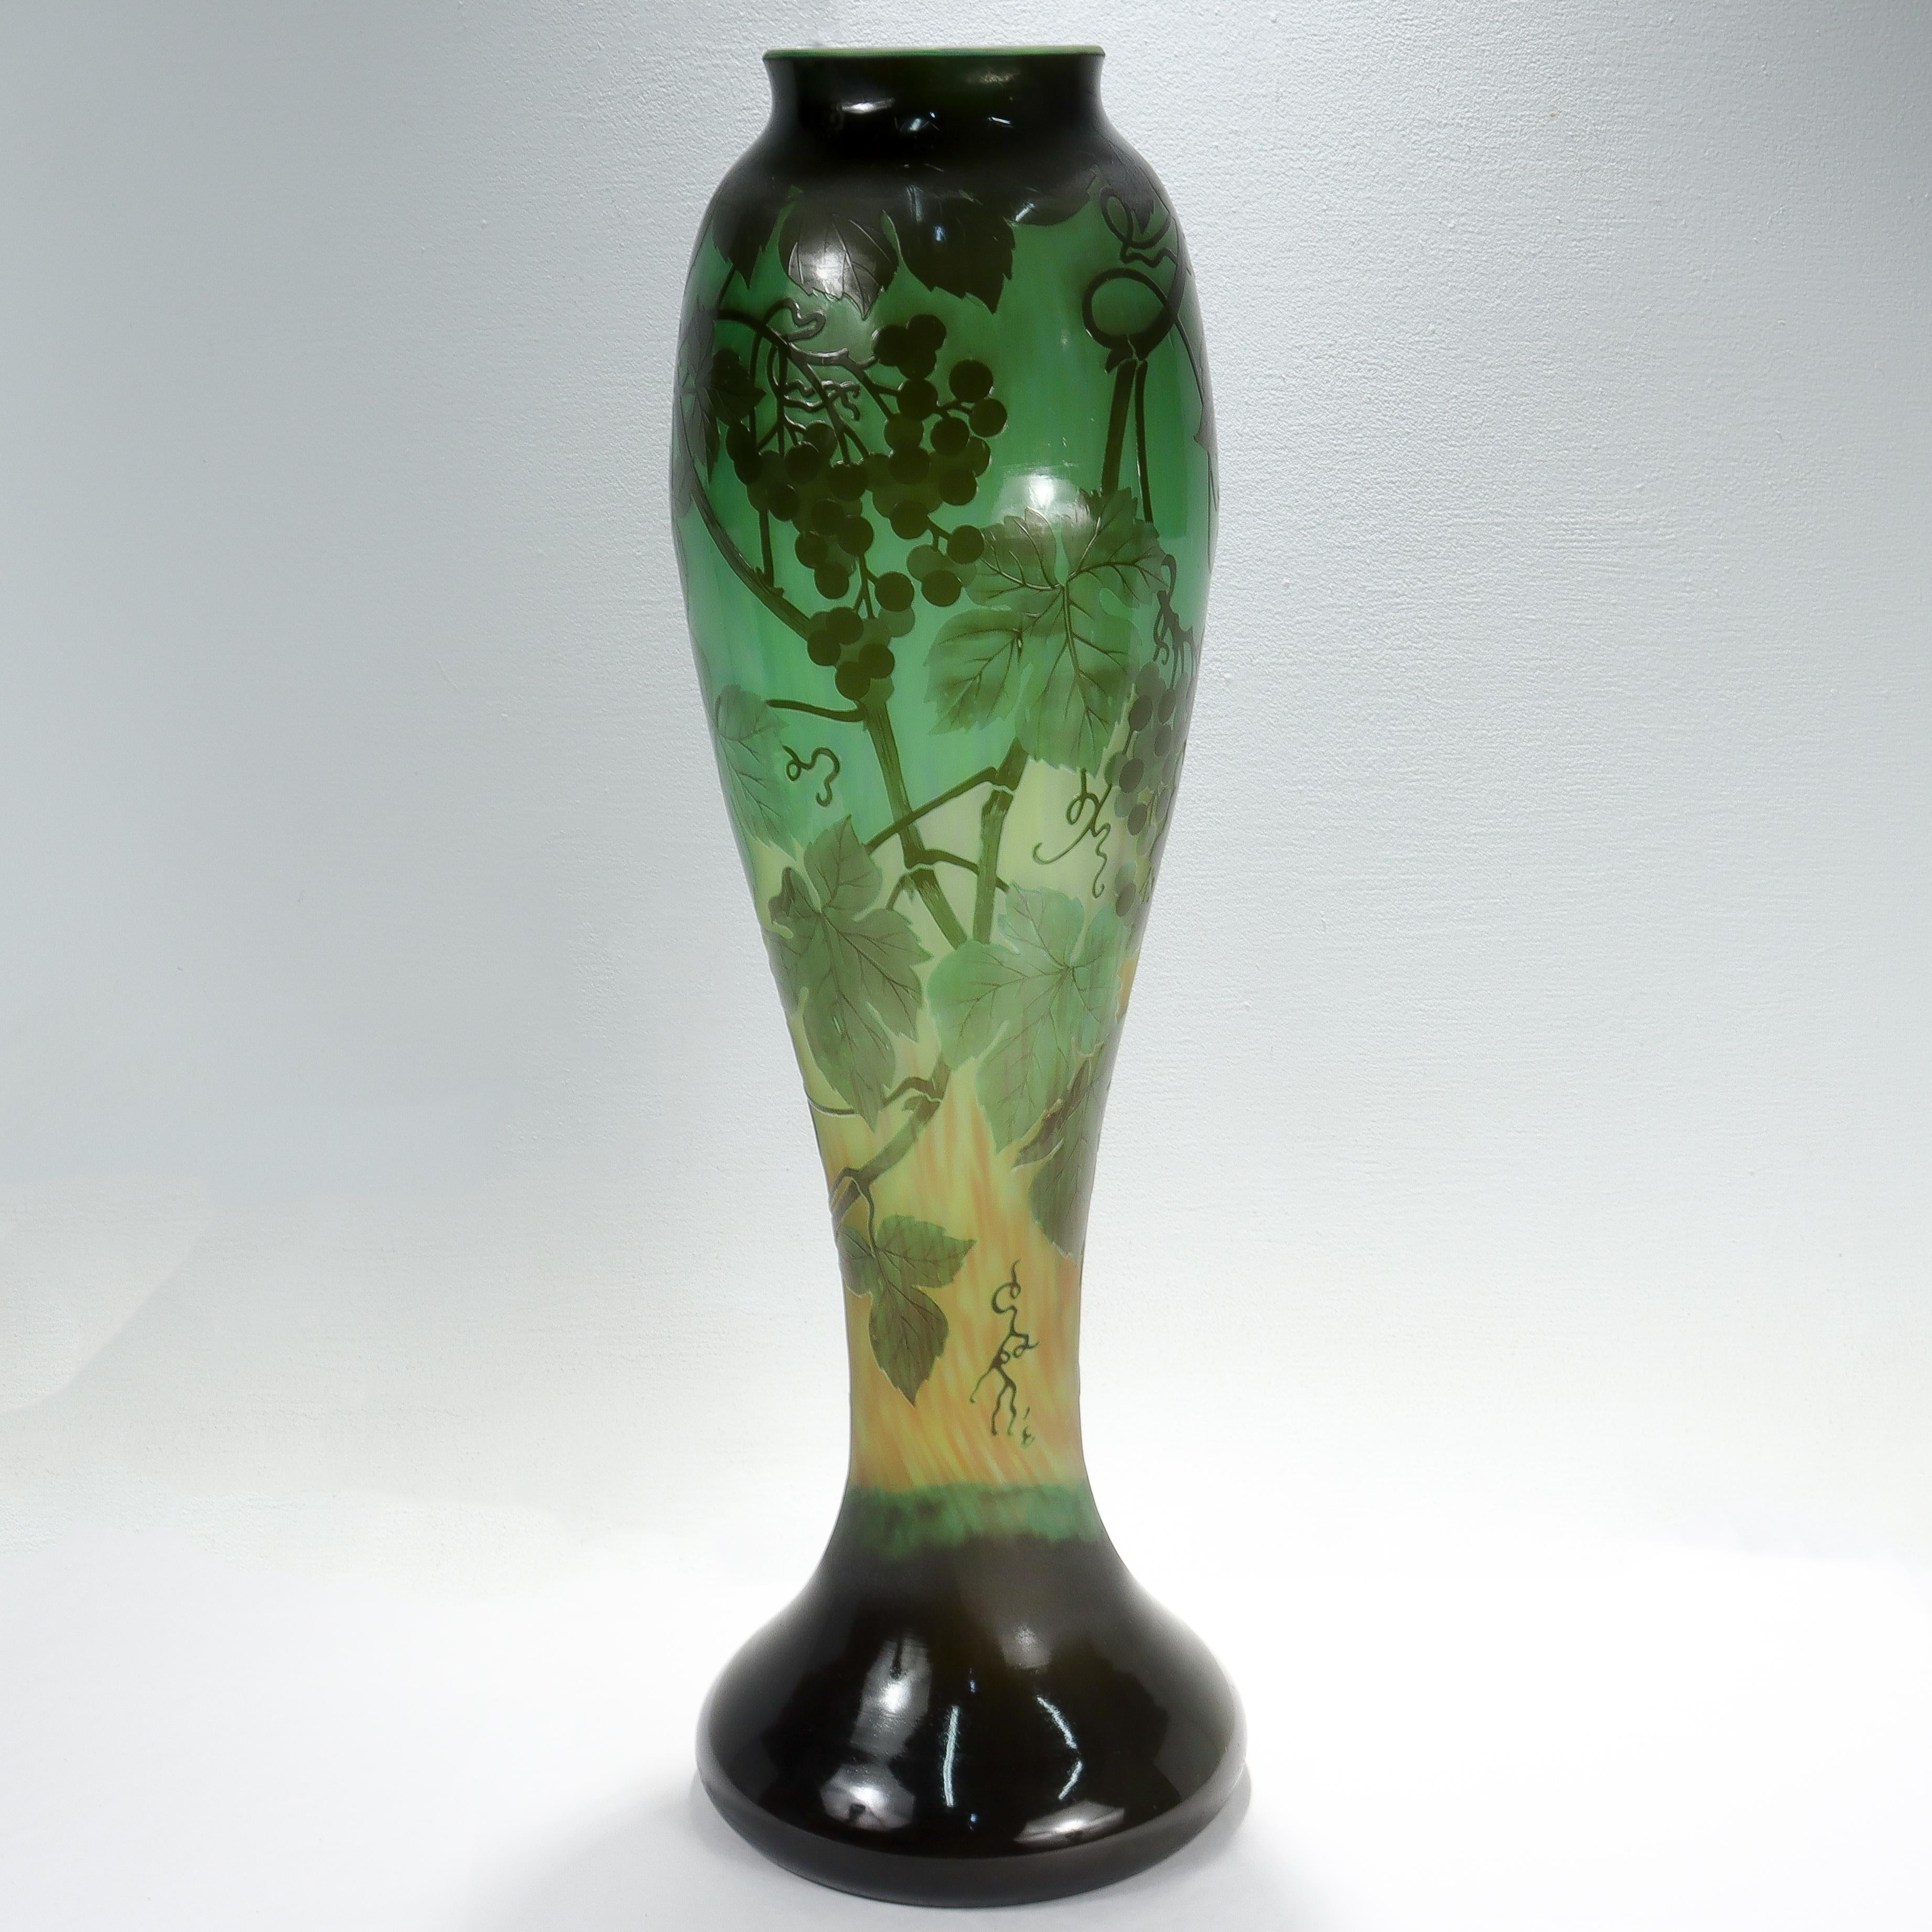 Un beau et très grand vase en verre d'art français ancien.

Dans les tons verts.

Avec des raisins, des feuilles de vigne et des vignes découpés à l'acide en camée au dos.

Signé 